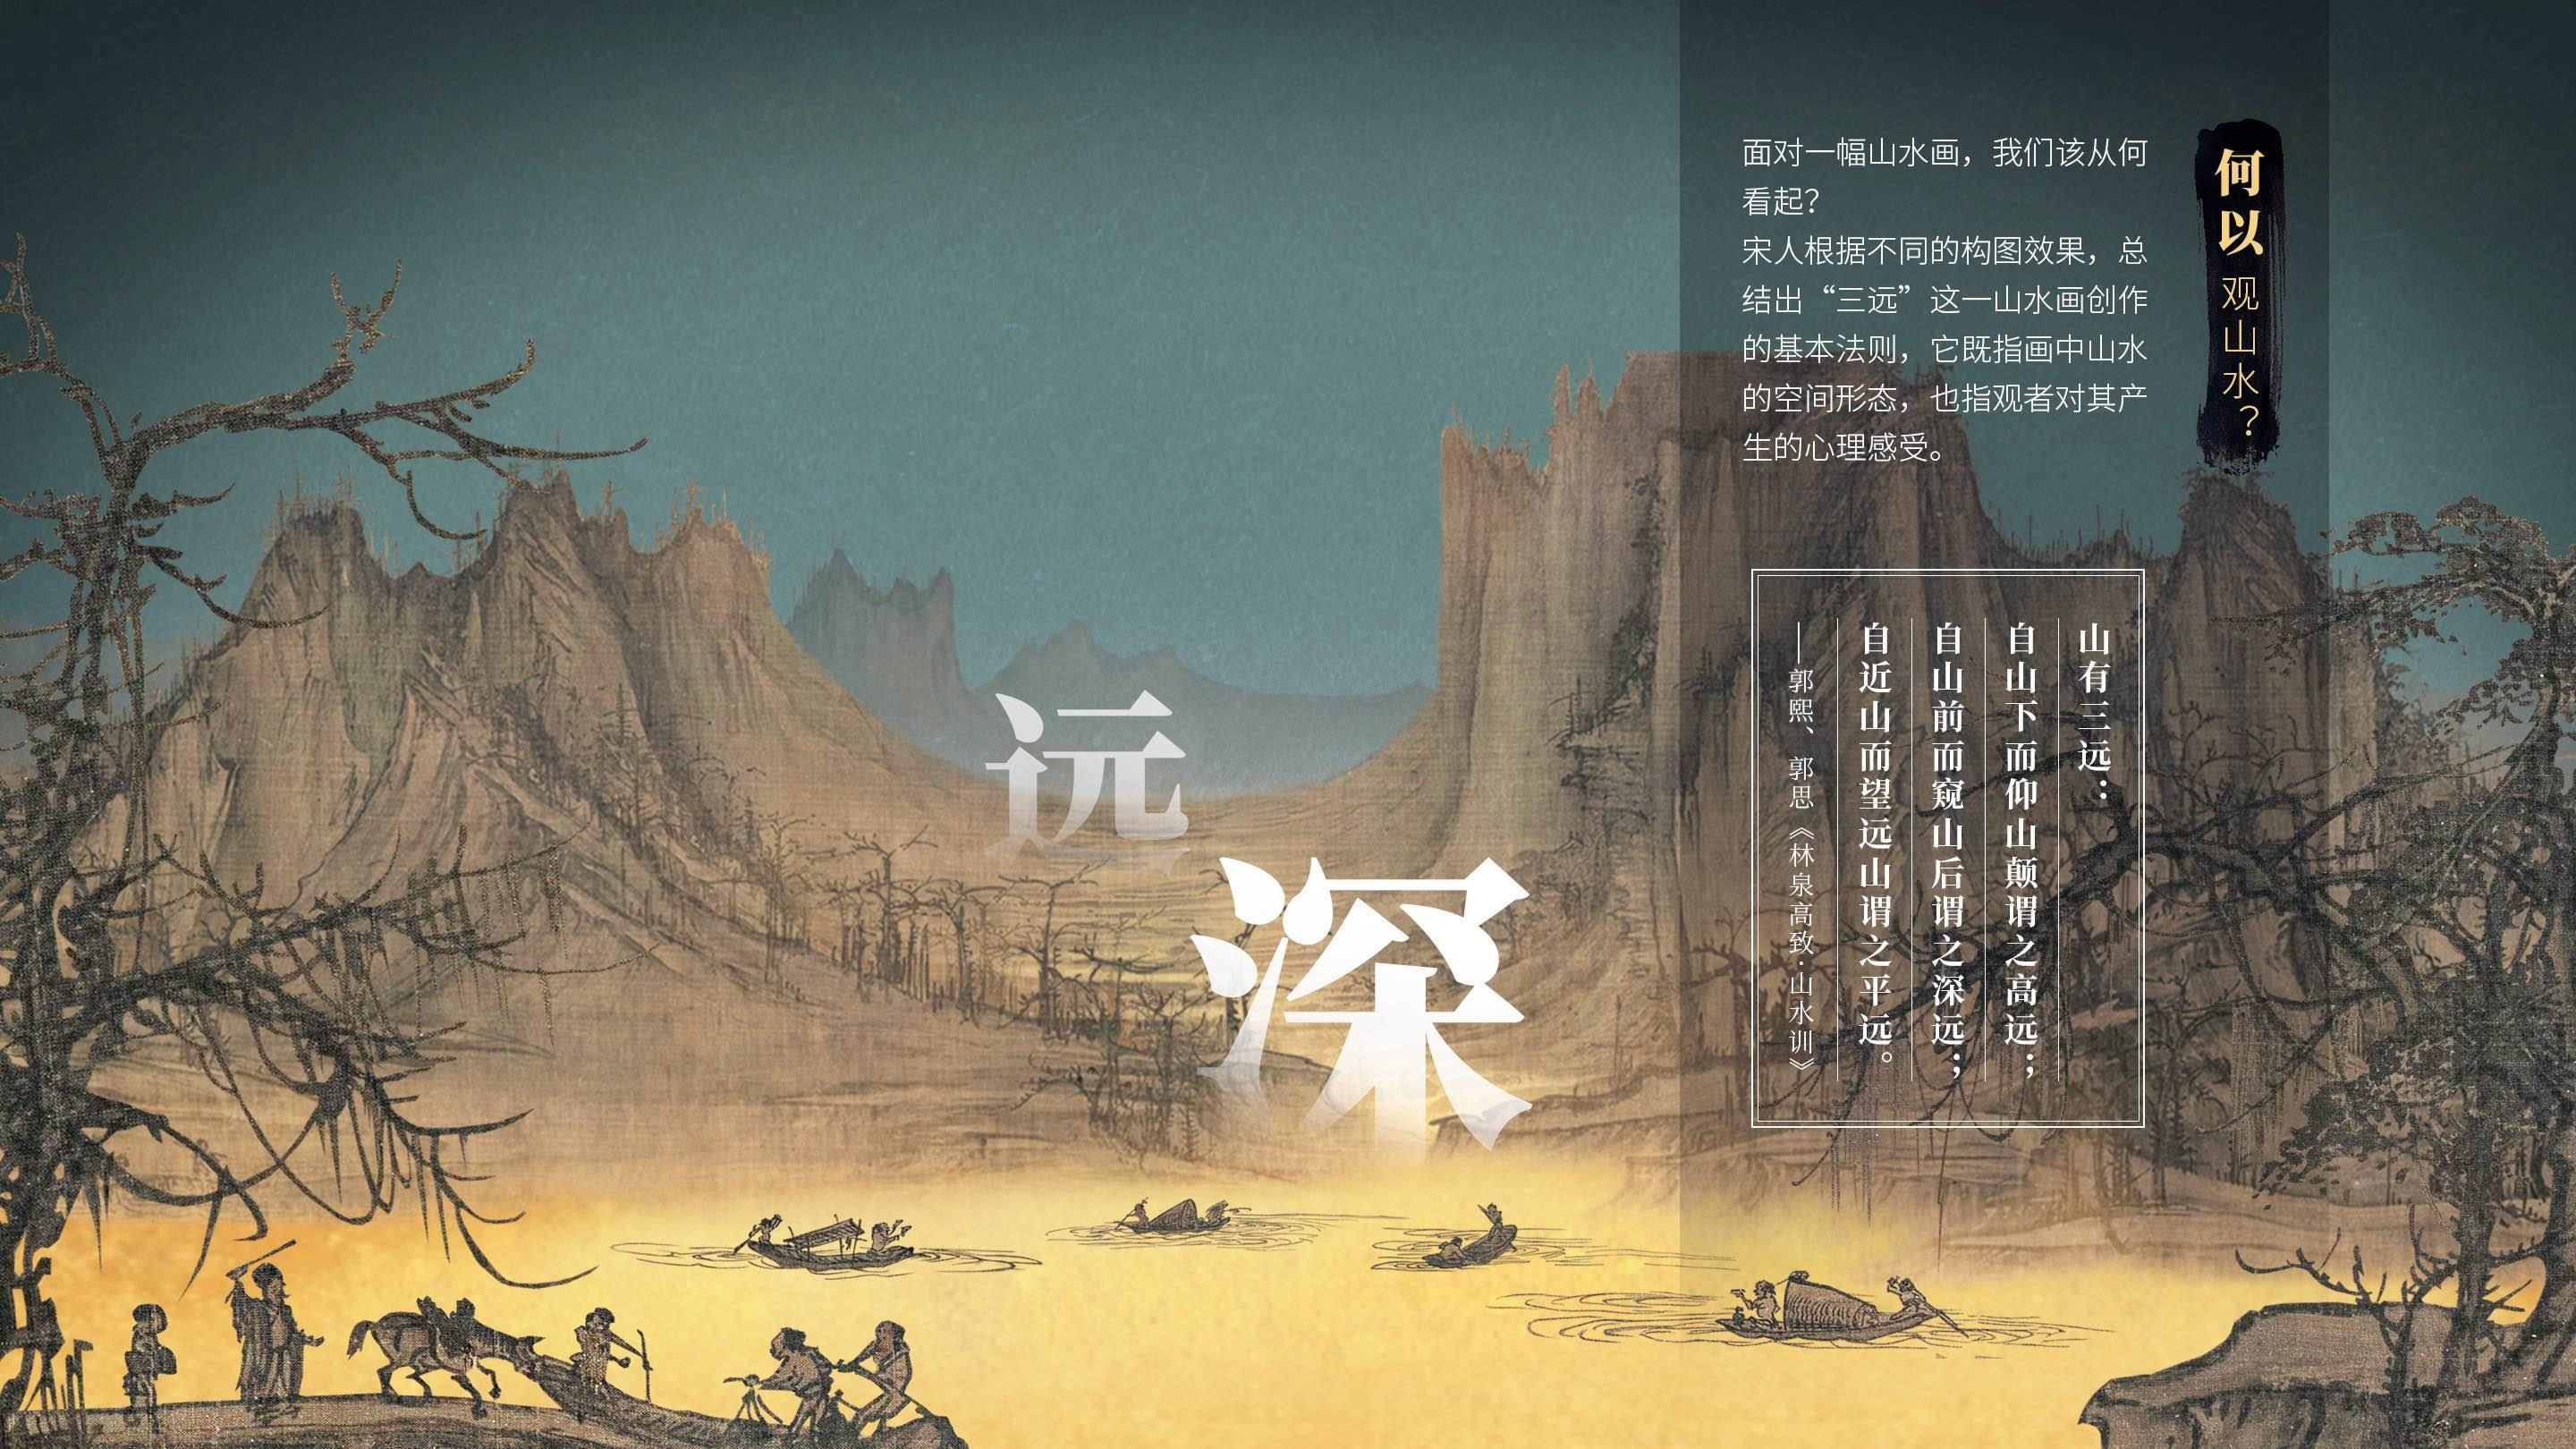 思想+艺术+技术” 《千年调·宋代山水花鸟》沉浸式展现中国文化艺术之美